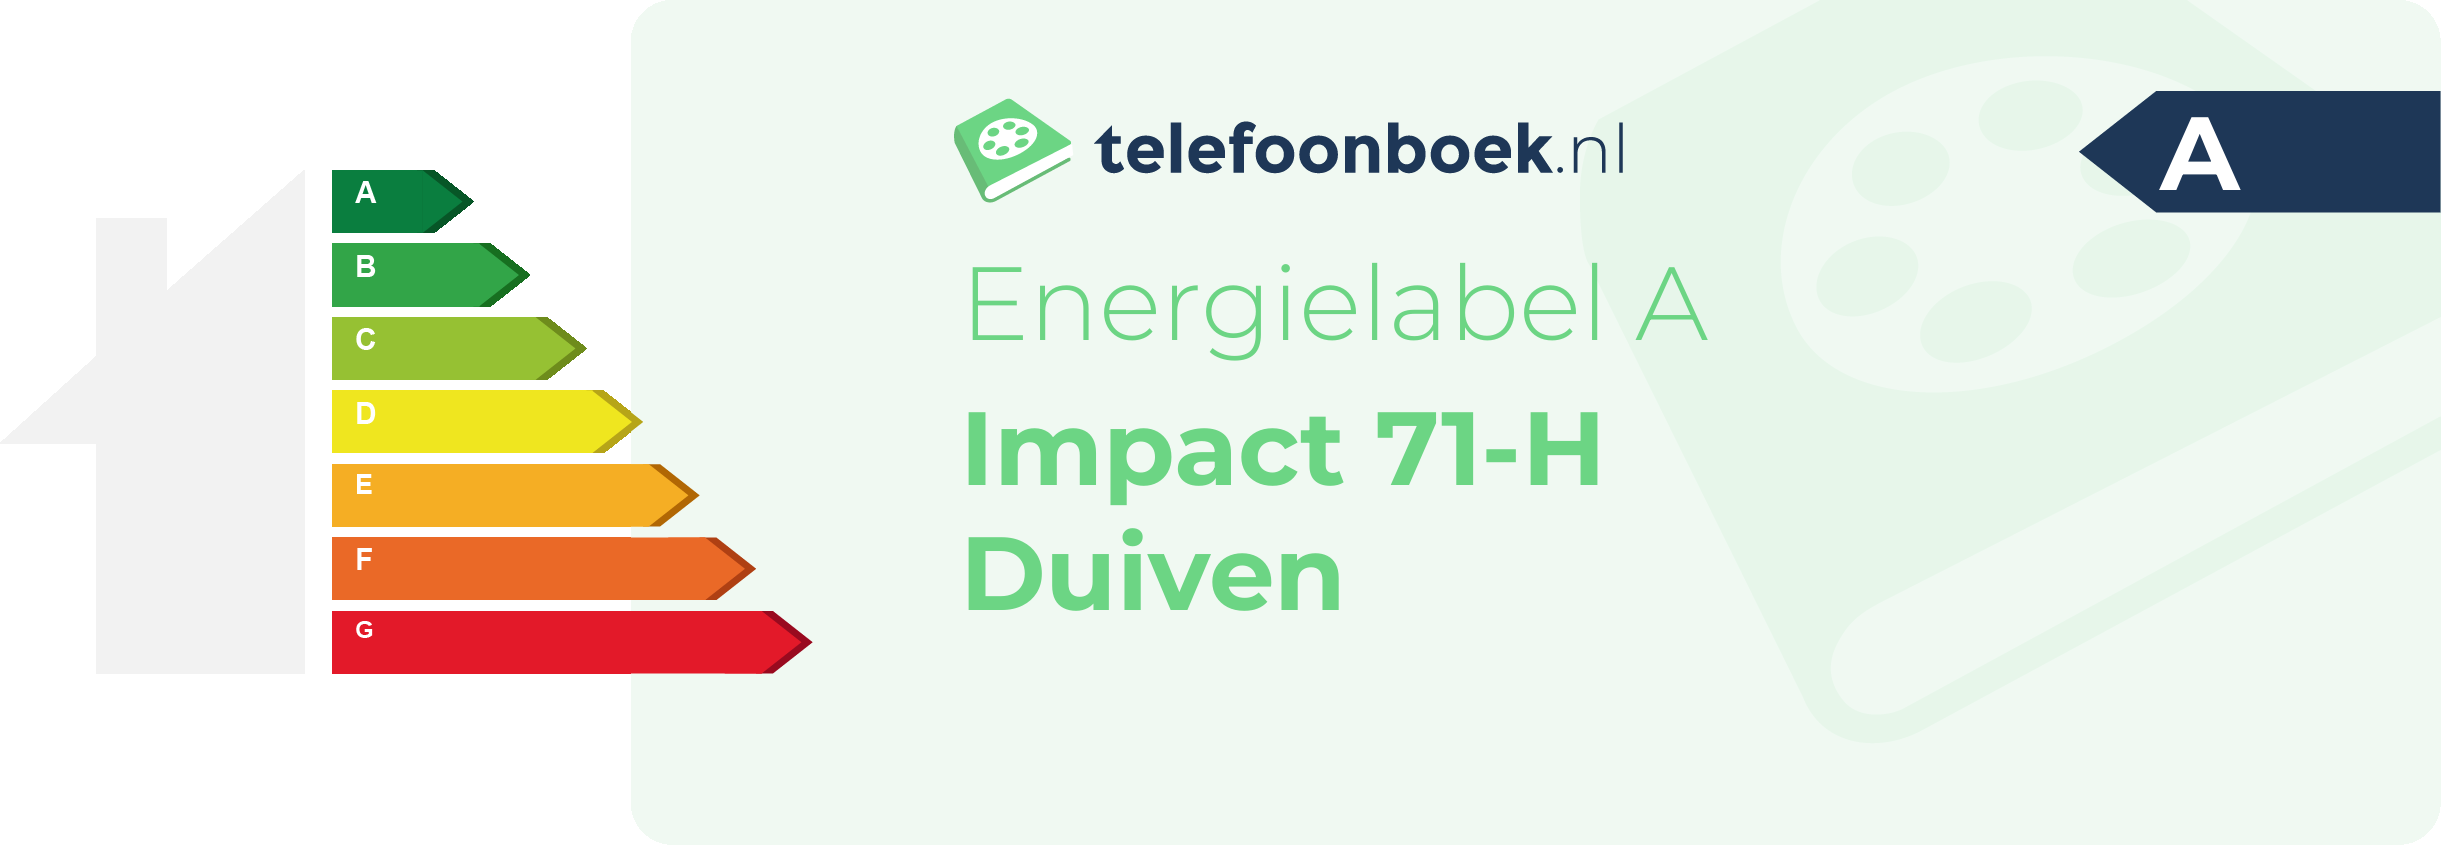 Energielabel Impact 71-H Duiven